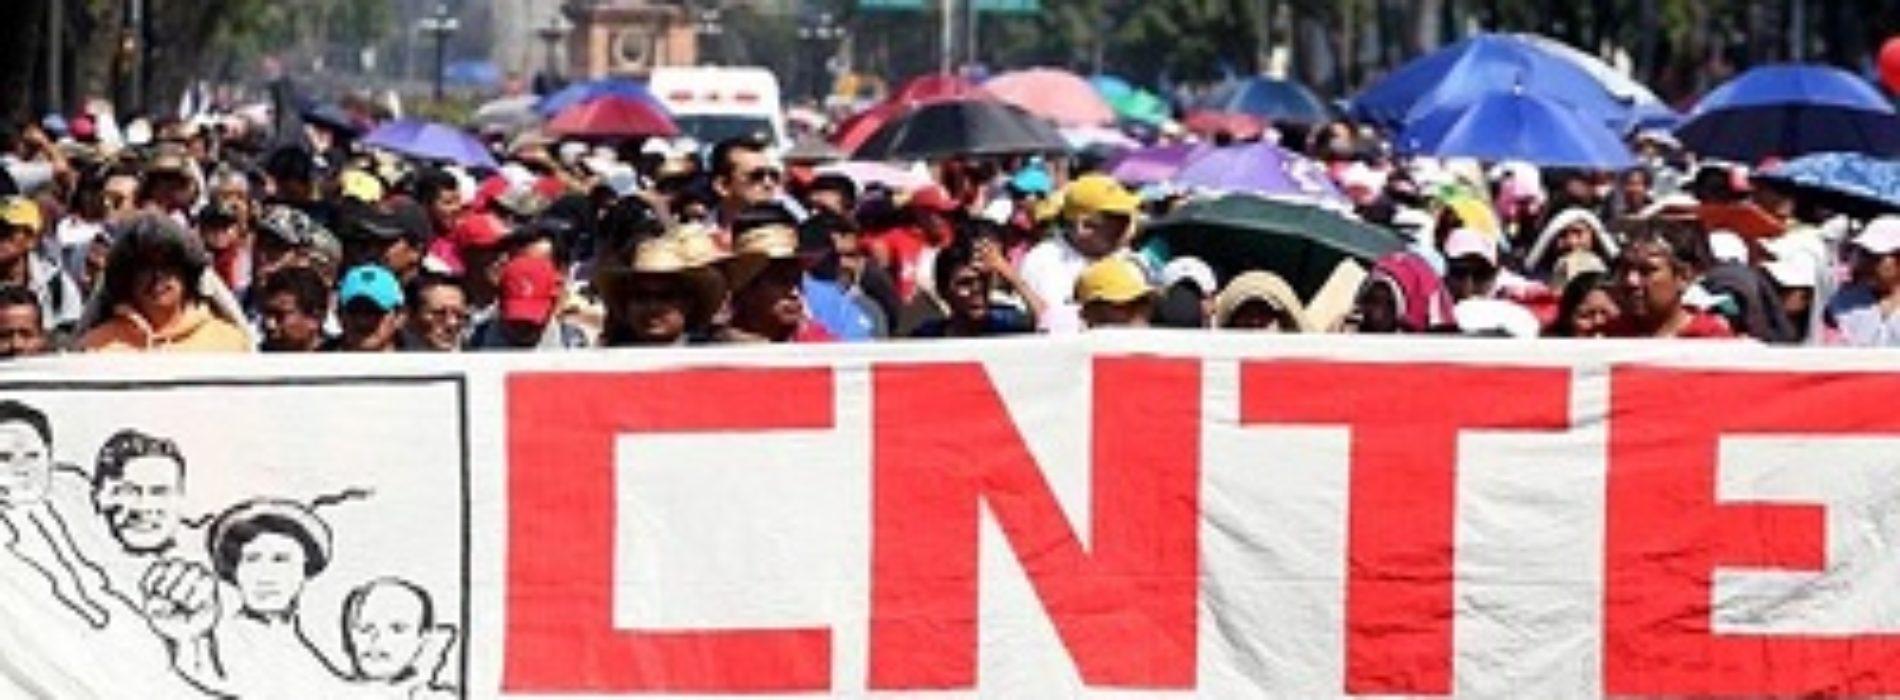 Pide Colectivo Democrático de la CNTE suspender “paro
electorero” en Oaxaca